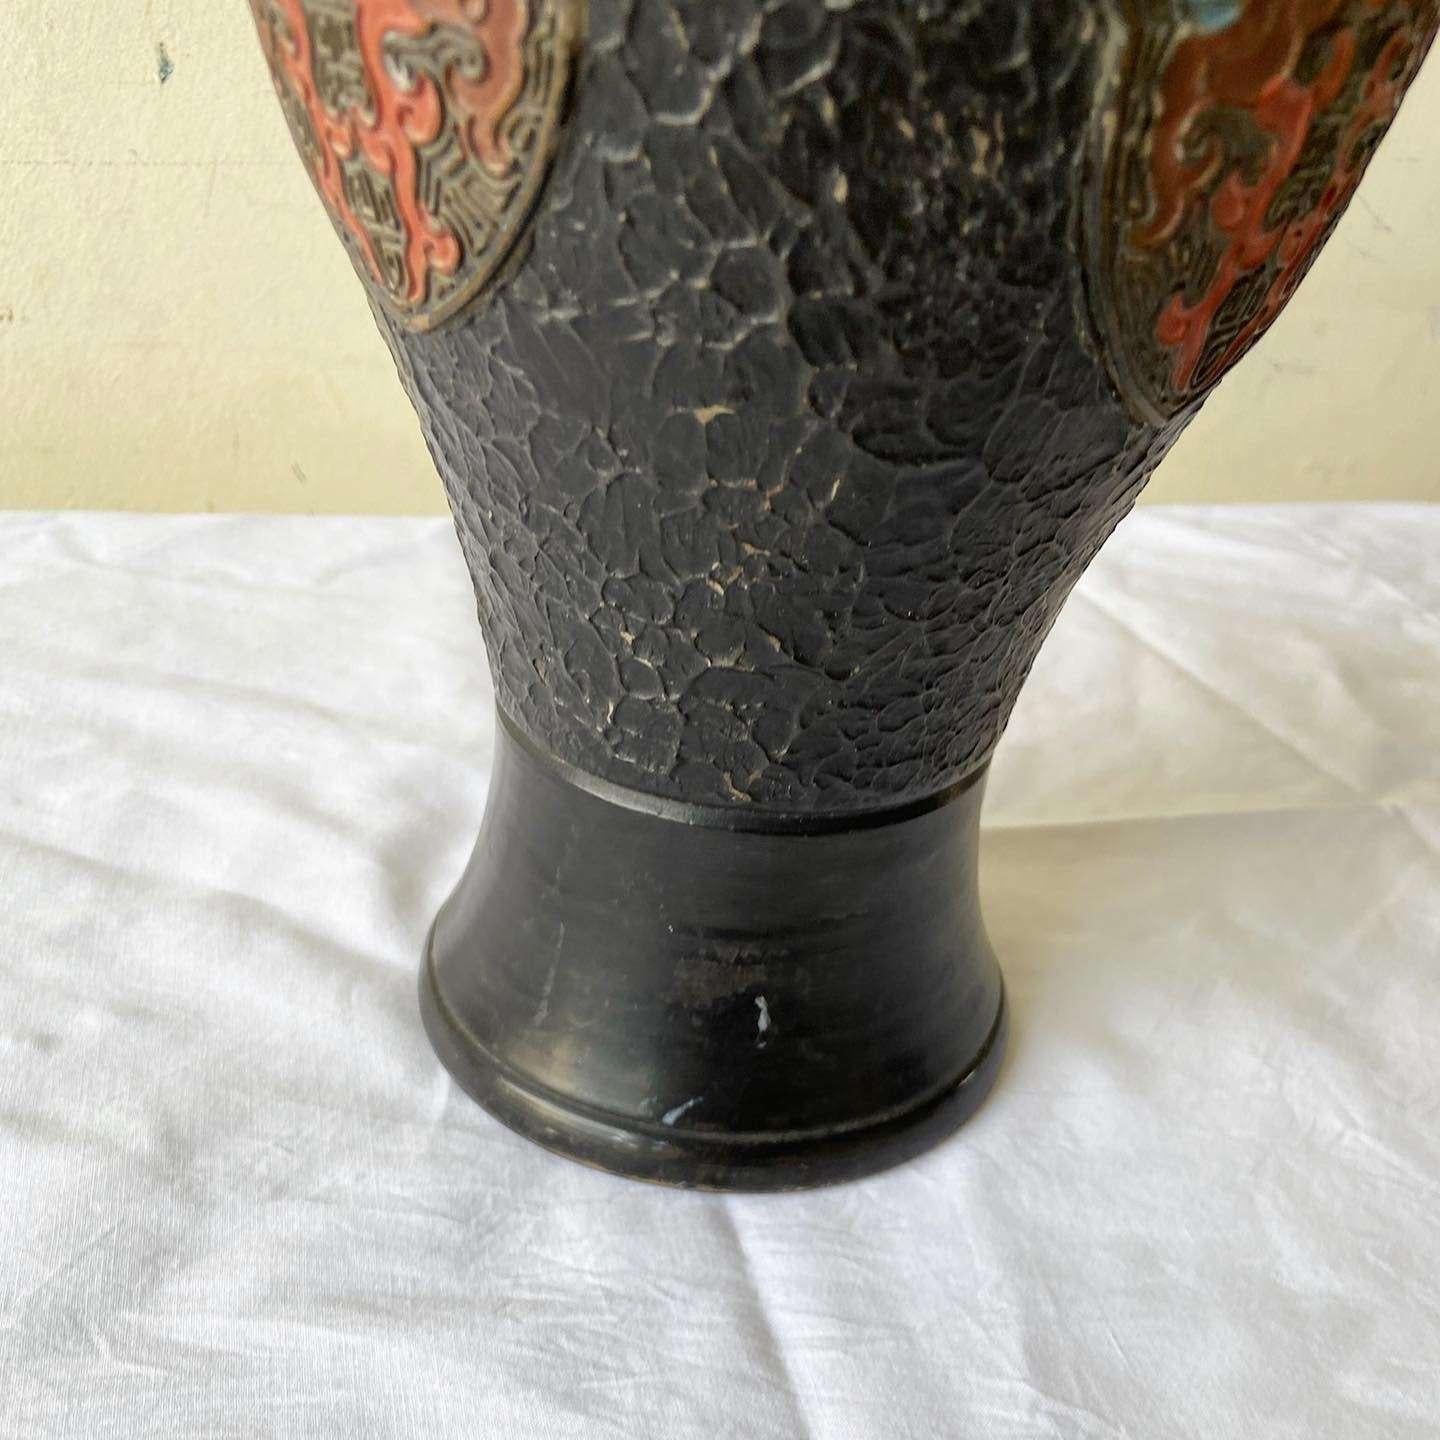 Incroyable vase vintage japonais en poterie Tokanabe noire. Elle est ornée d'un motif émaillé bleu et rouge.
